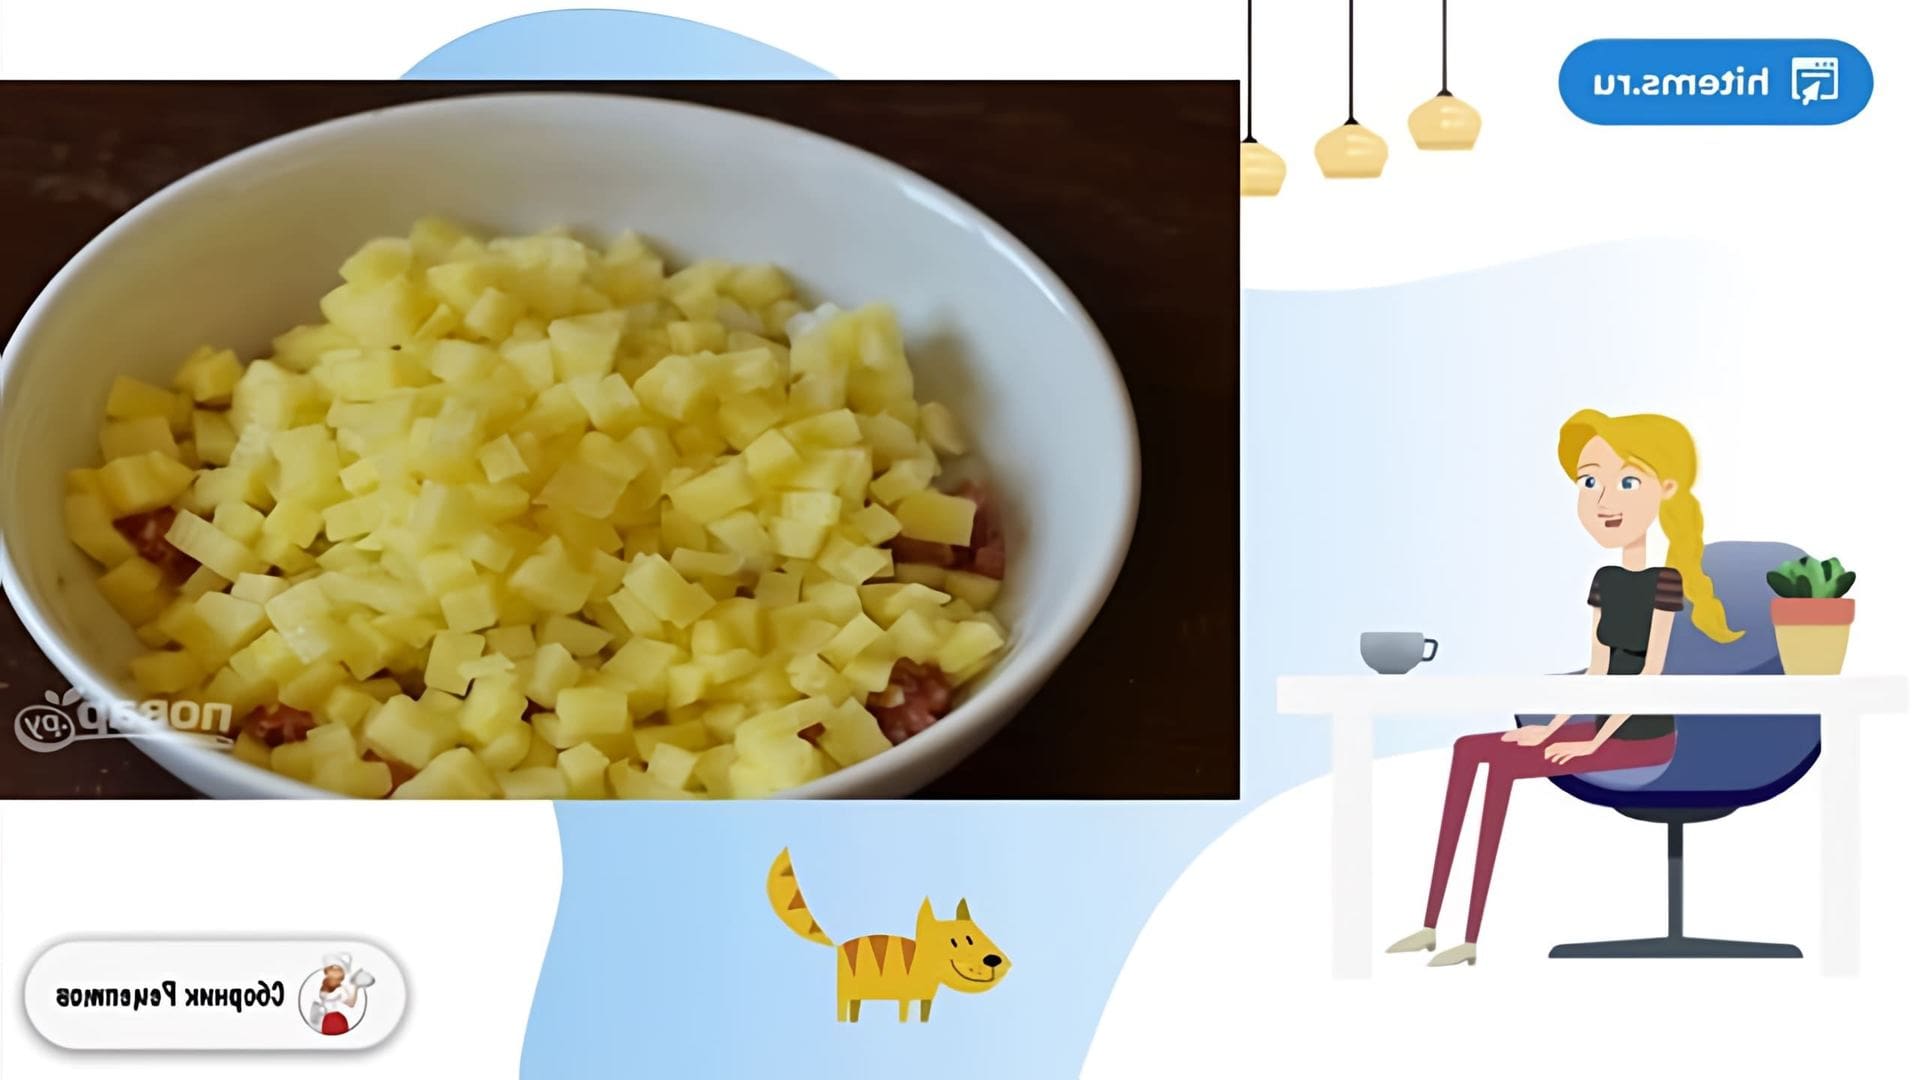 В этом видео демонстрируется рецепт приготовления штруделя с мясом и картофелем